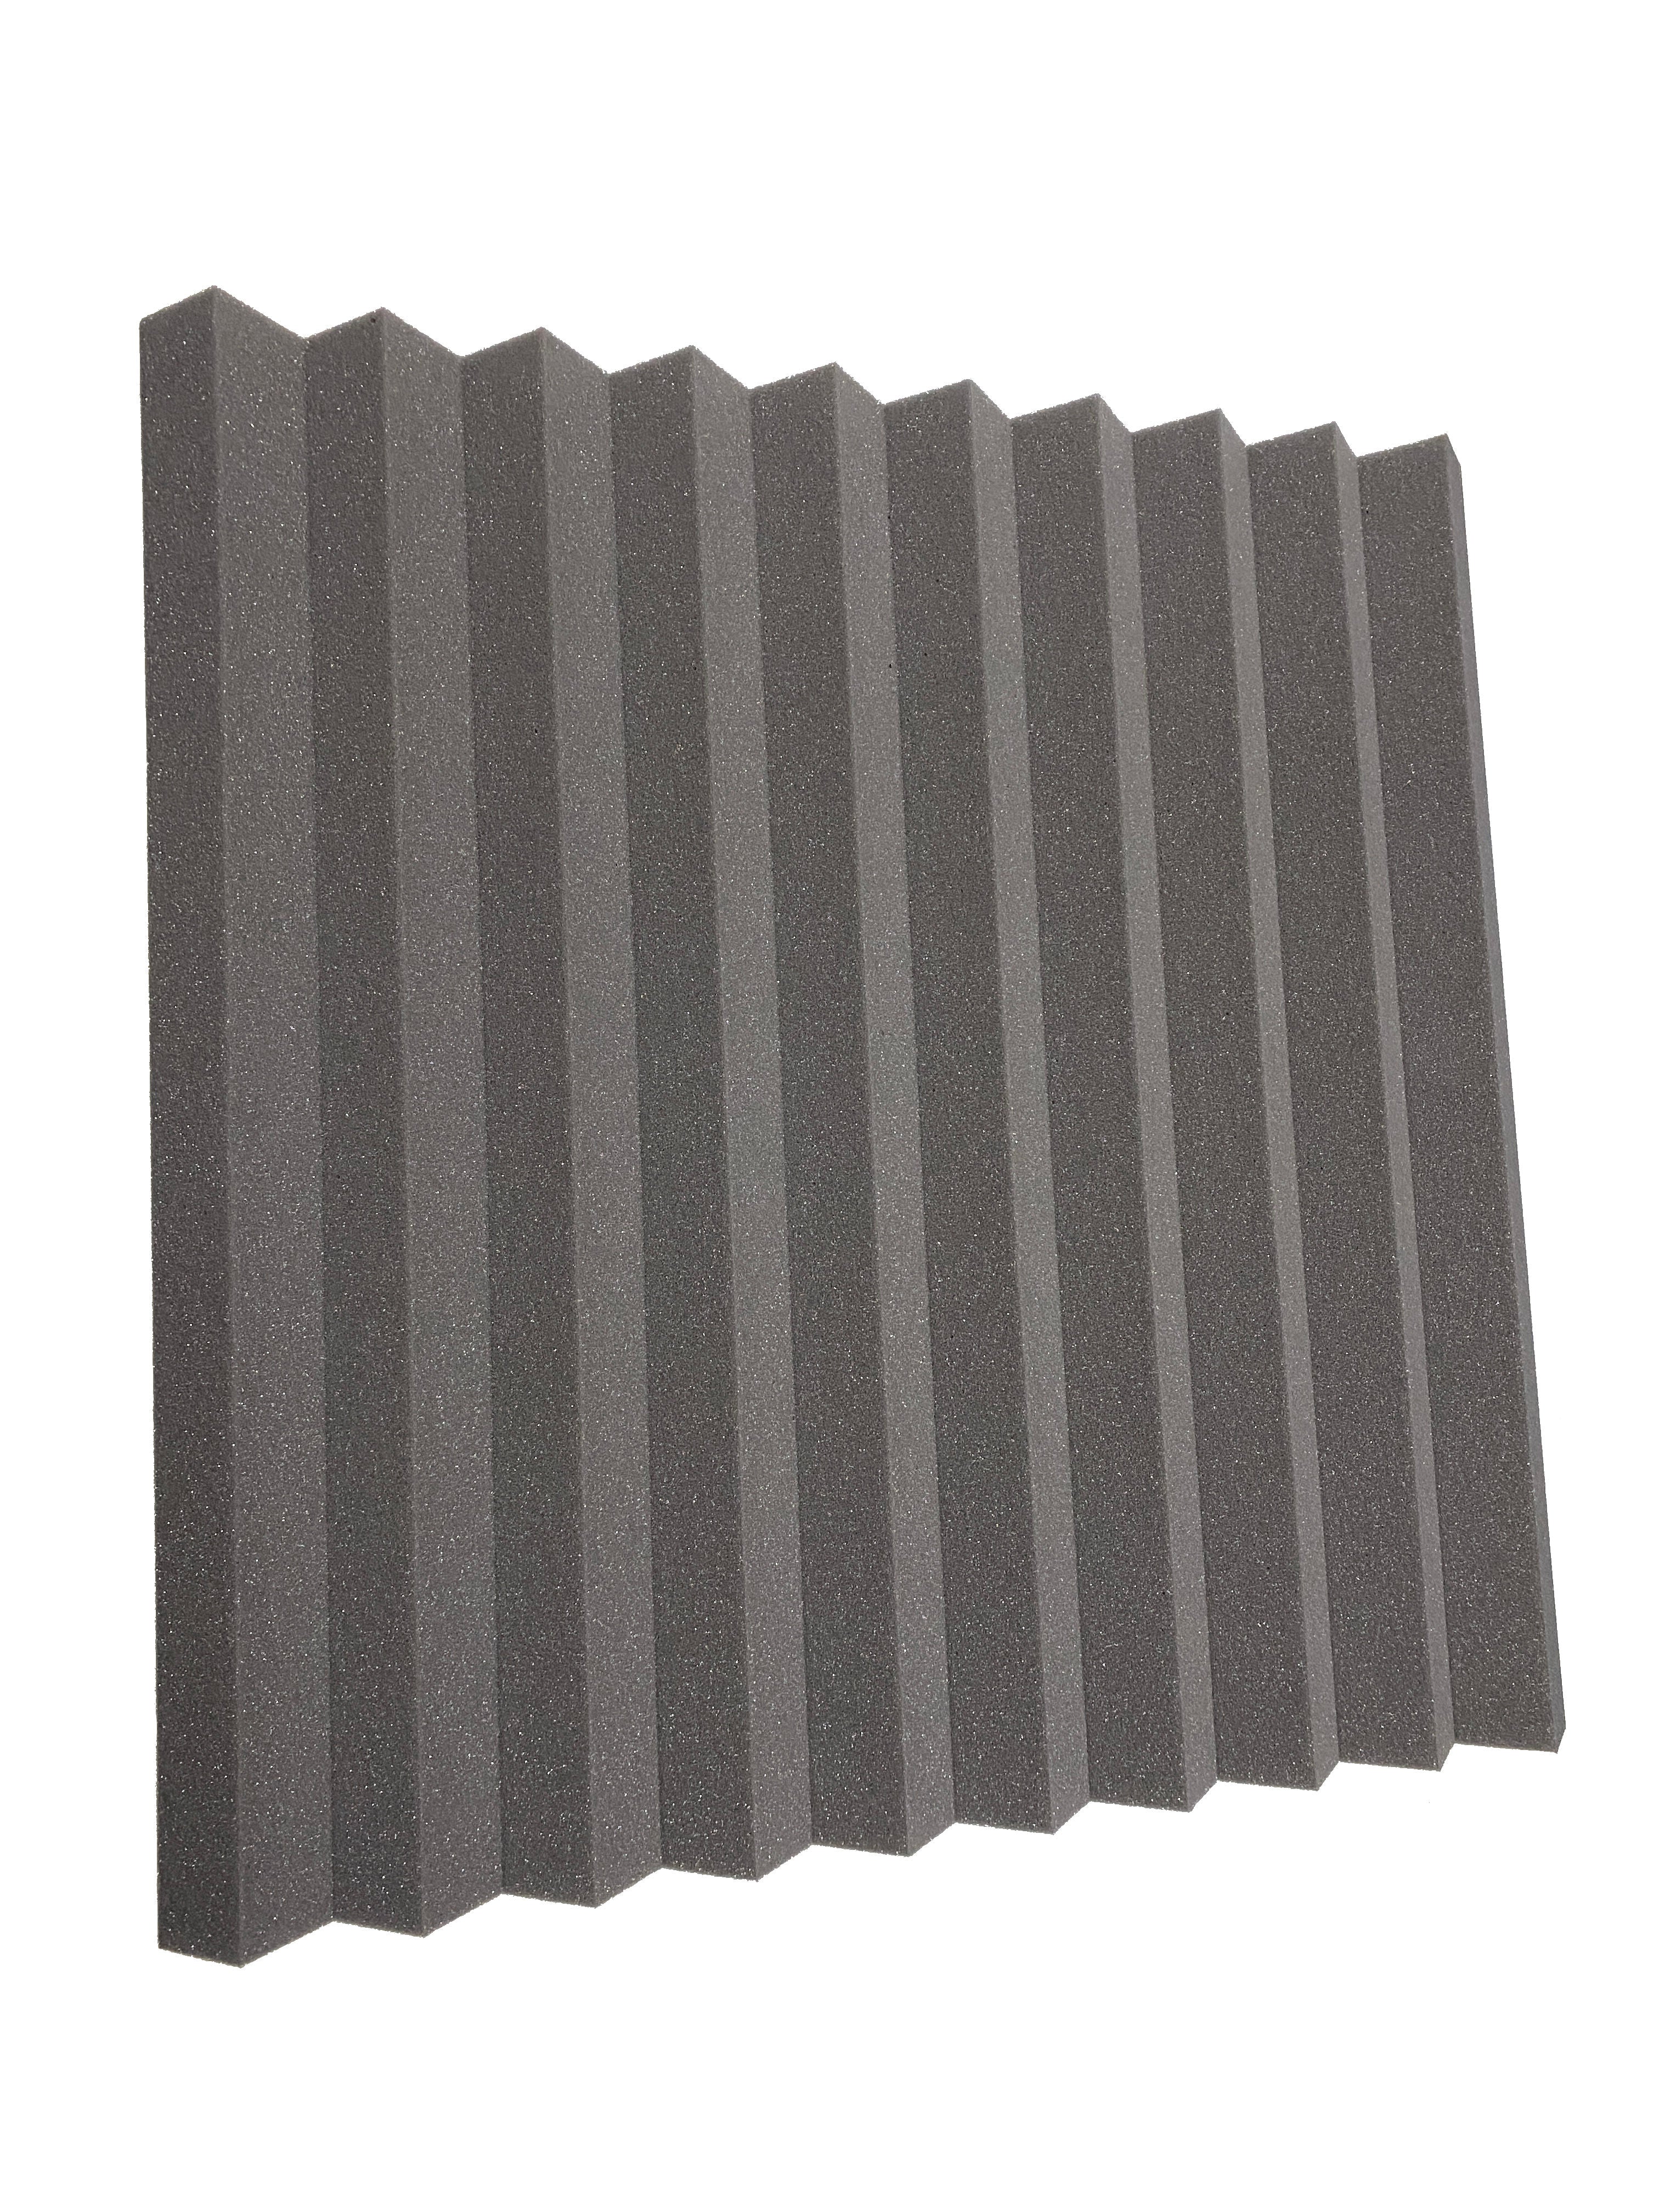 Acheter gris-moyen Wedge PRO 30&quot; Acoustic Studio Kit de dalles en mousse - 18 dalles, couverture de 10,44 m²